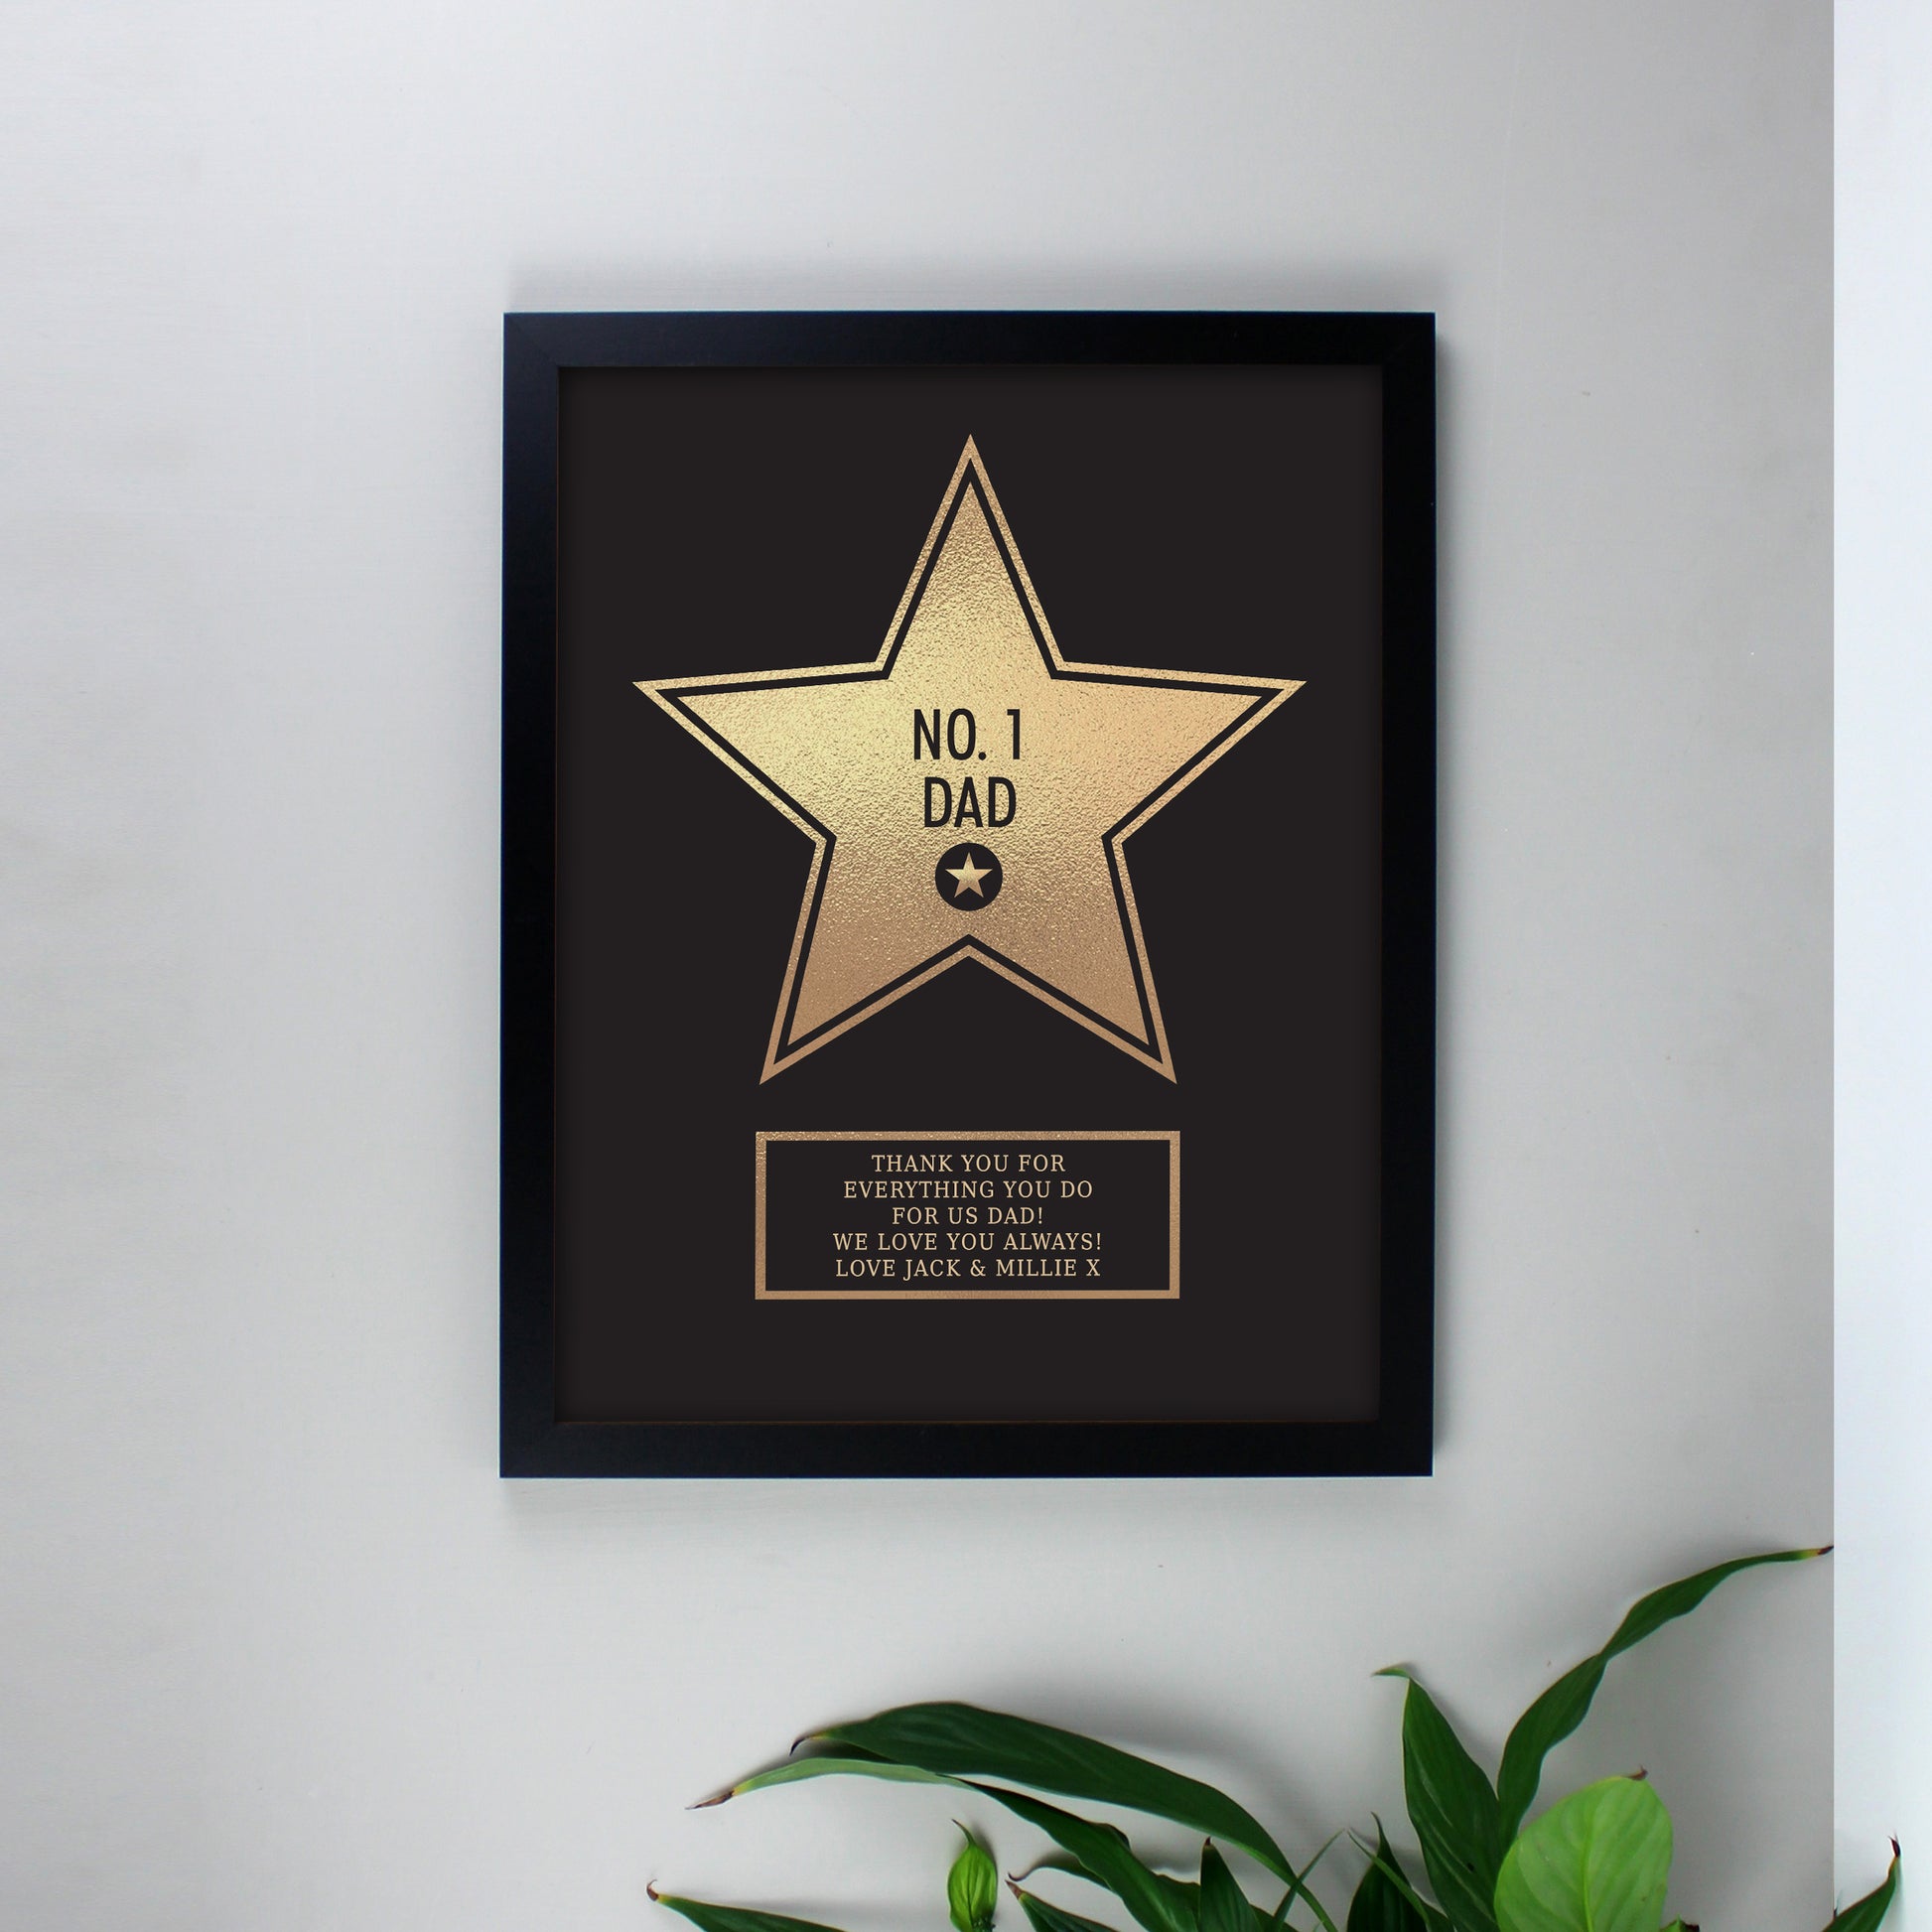 Walk of fame star framed print - Lilybet loves